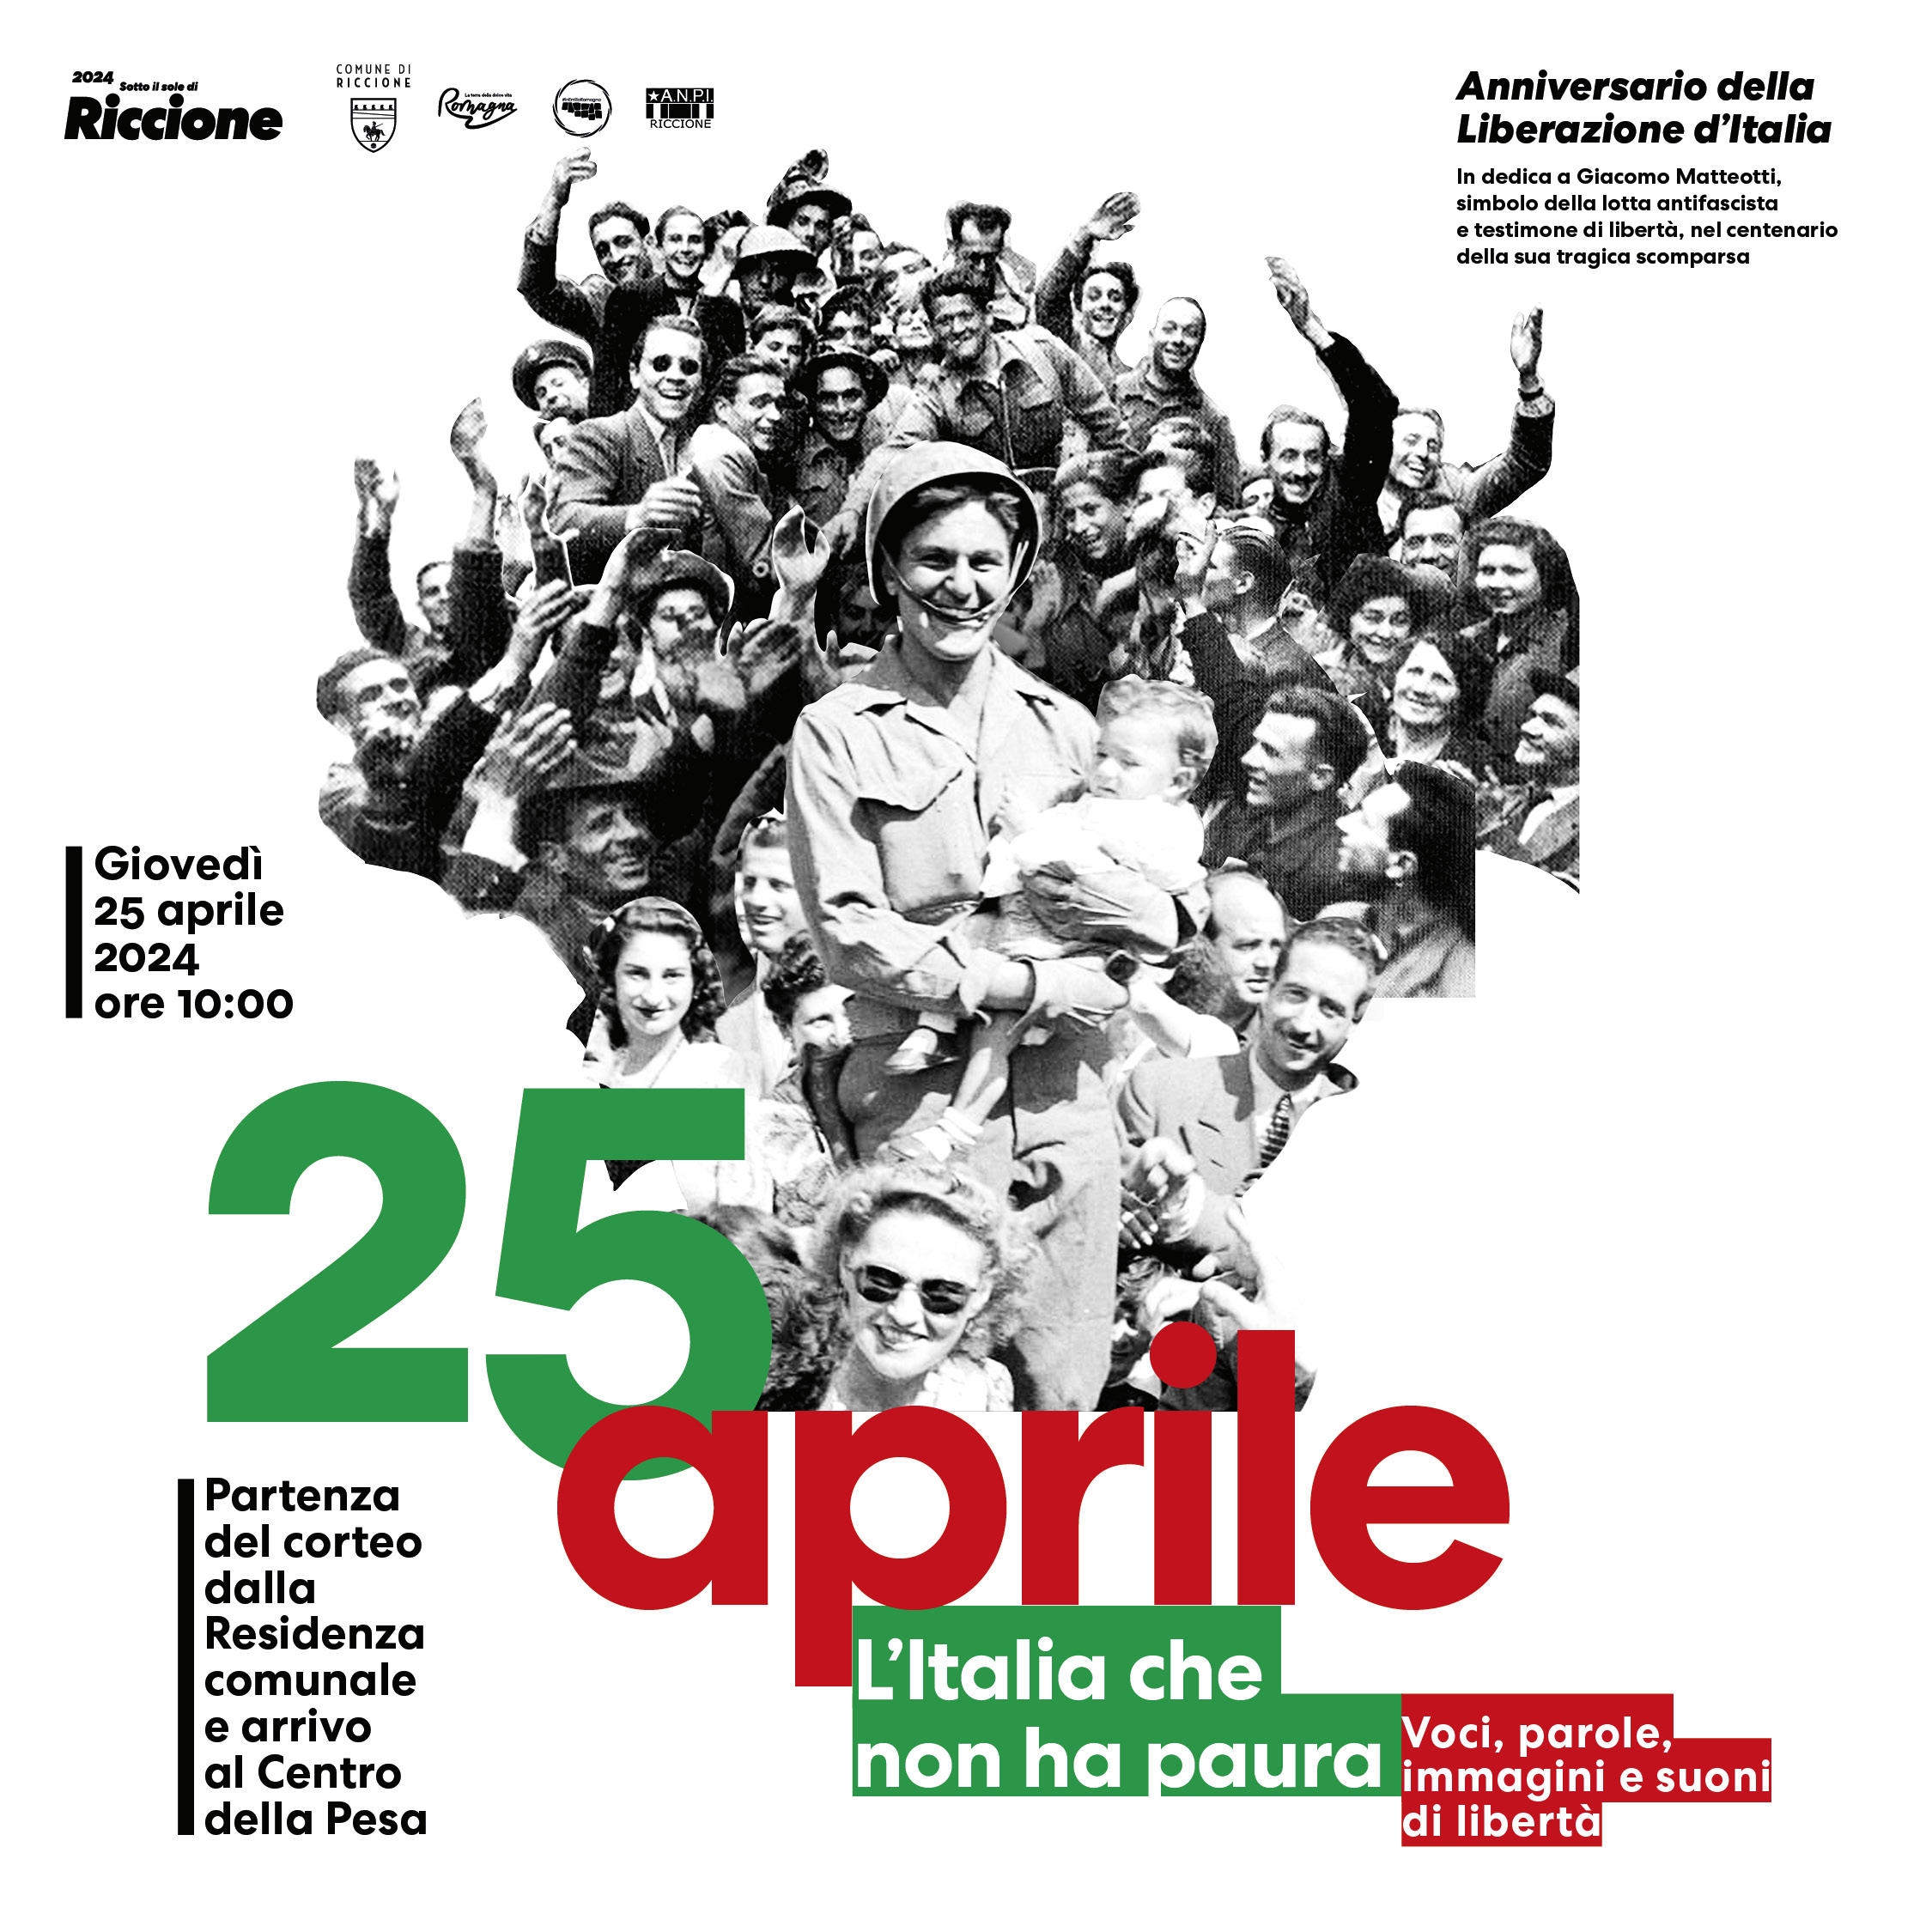 Riccione apre il ponte del 25 aprile con il concerto di Roberto Vecchioni sold out Per la Liberazione poster art, corteo cittadino e conferenza scenica con Ezio Mauro